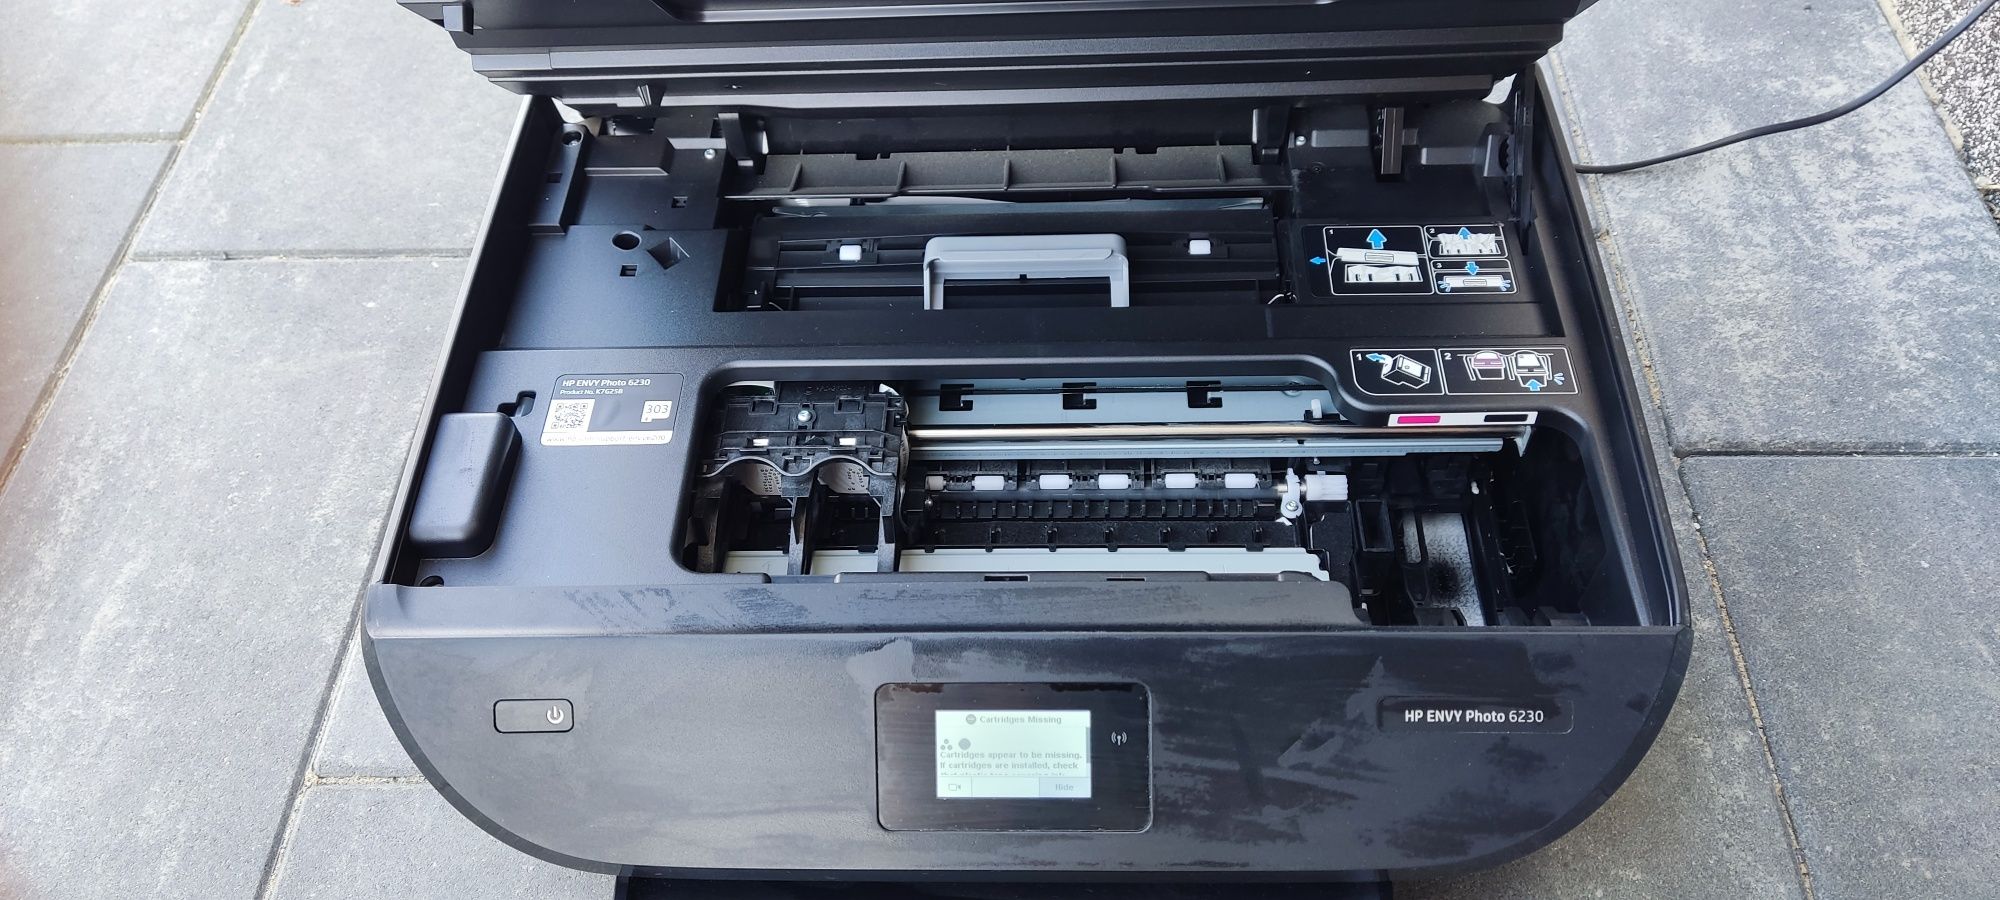 Urządzenie wielofunkcyjne drukarka skaner kopiarka HP Envy Photo 6230